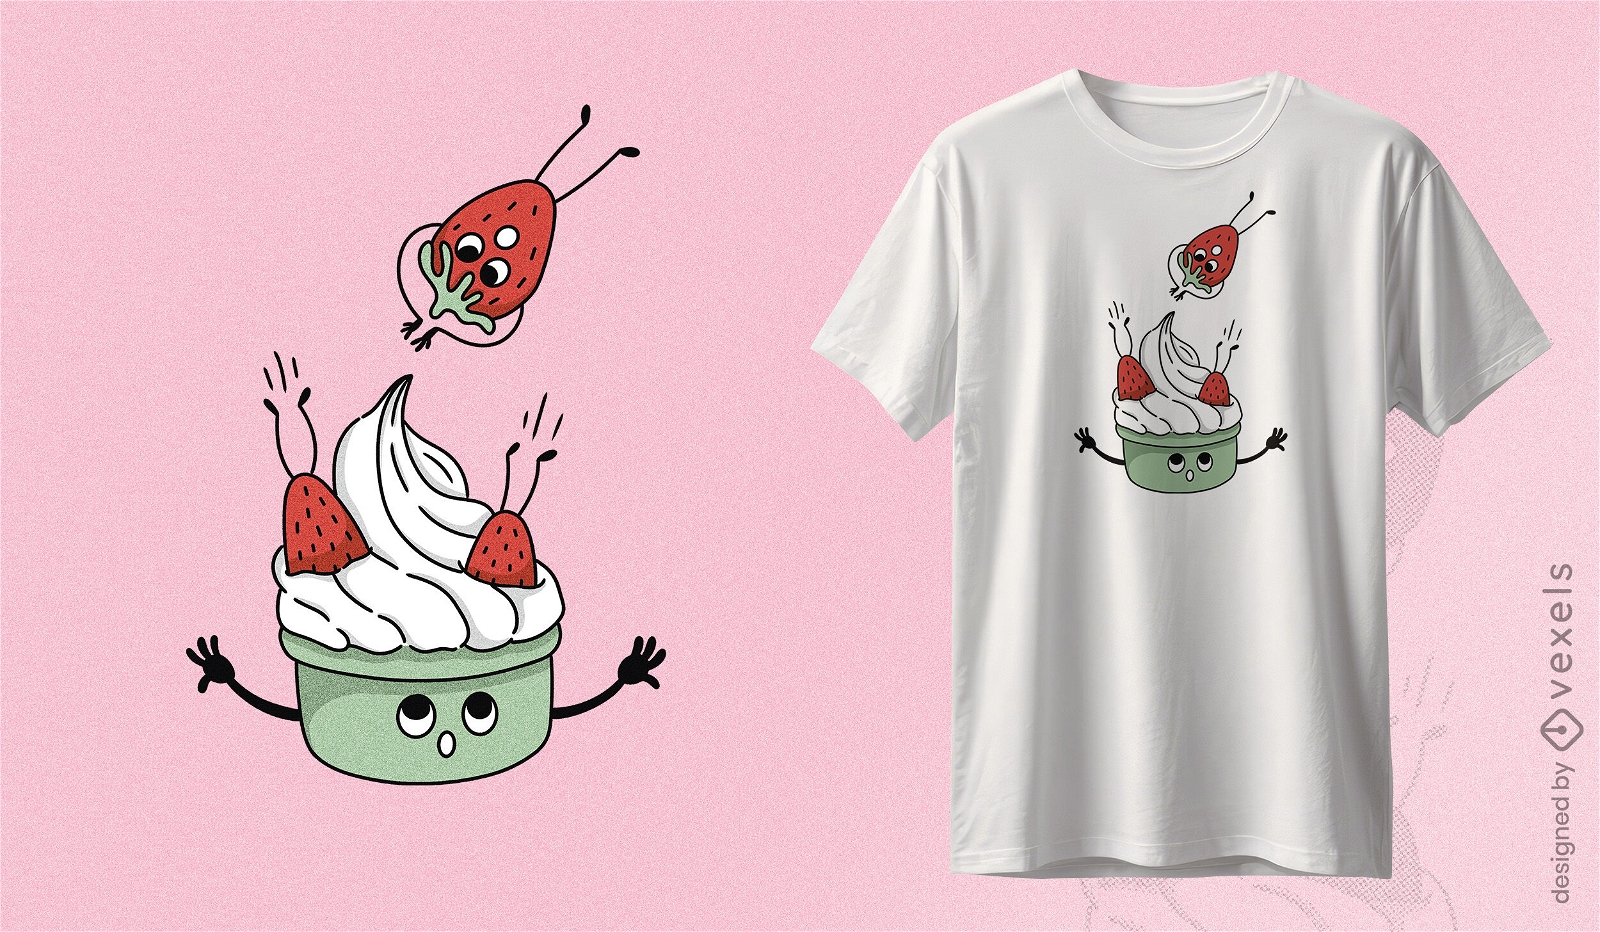 Verspieltes T-Shirt-Design mit Erdbeeren und Sahne. Skurriles T-Shirt-Design mit fr?hlichen Erdbeeren, die mit verspieltem Gesichtsausdruck zu einer Sch?ssel Sahne springen.